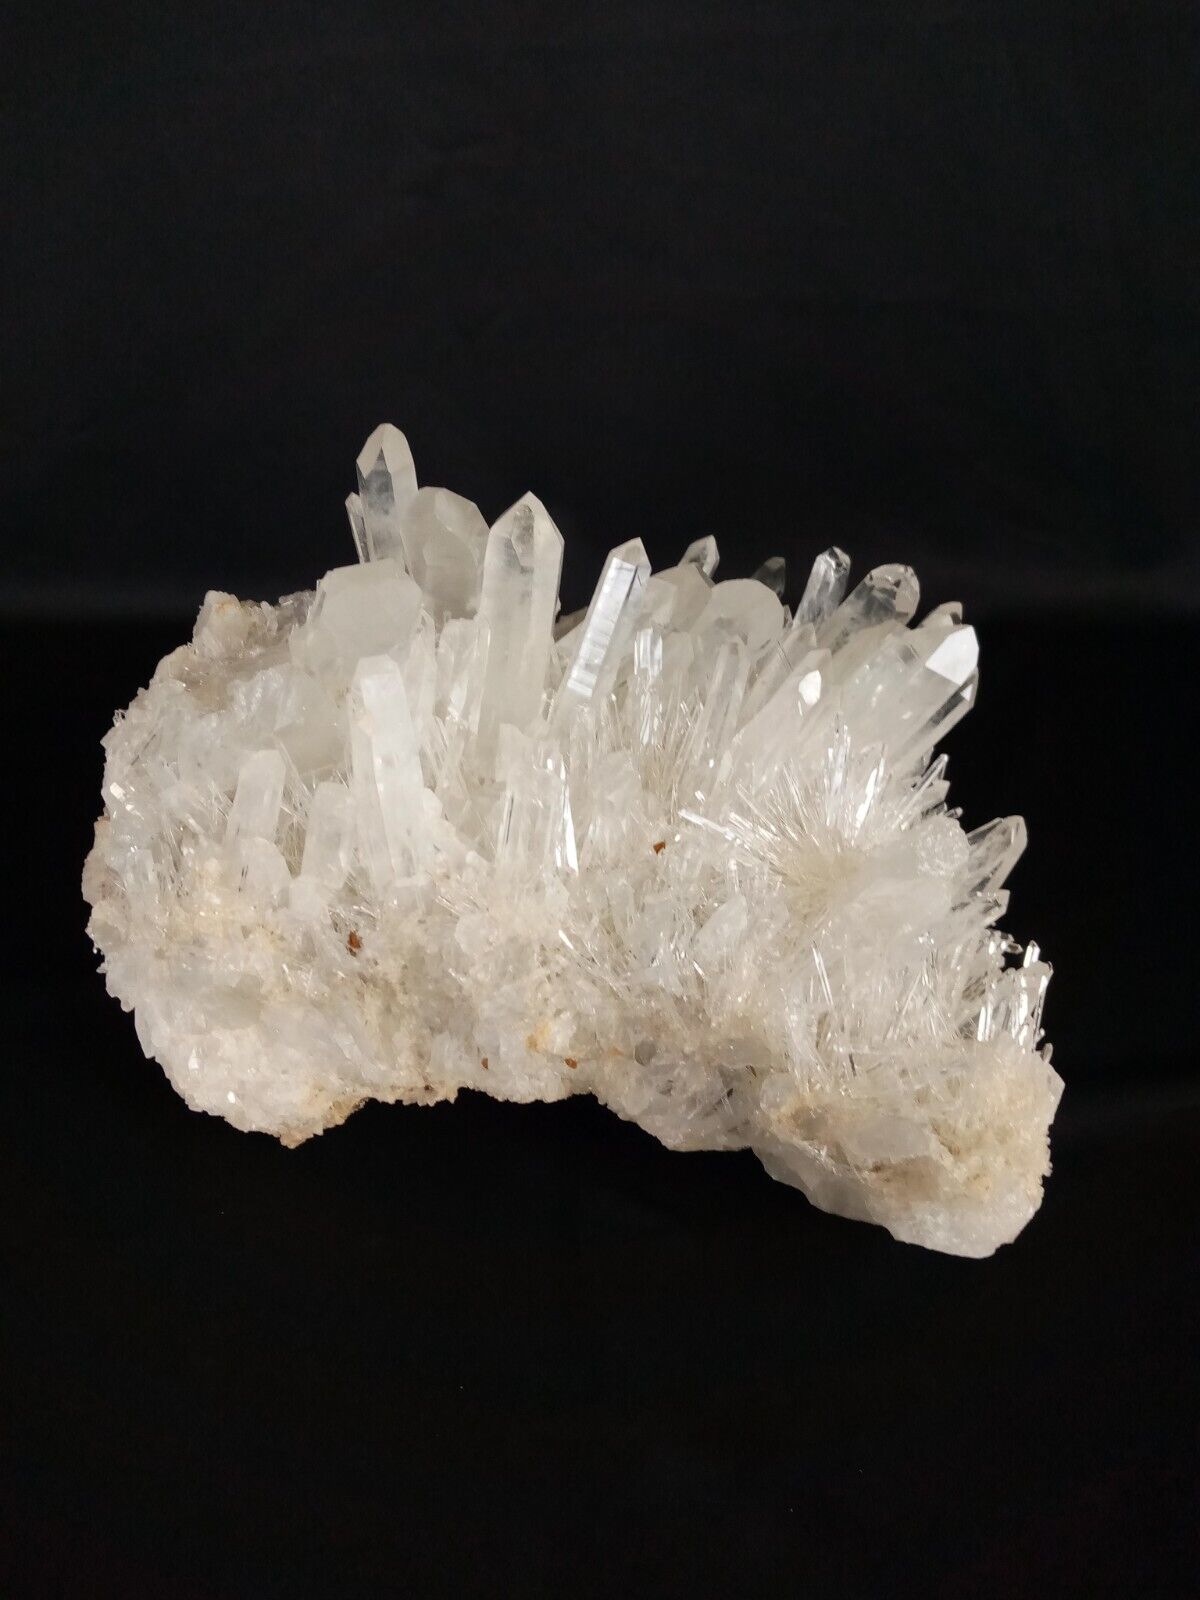 LARGE 10lb or 4.5 KG Natural White Quartz Cluster Point Crystal Mineral Specimen